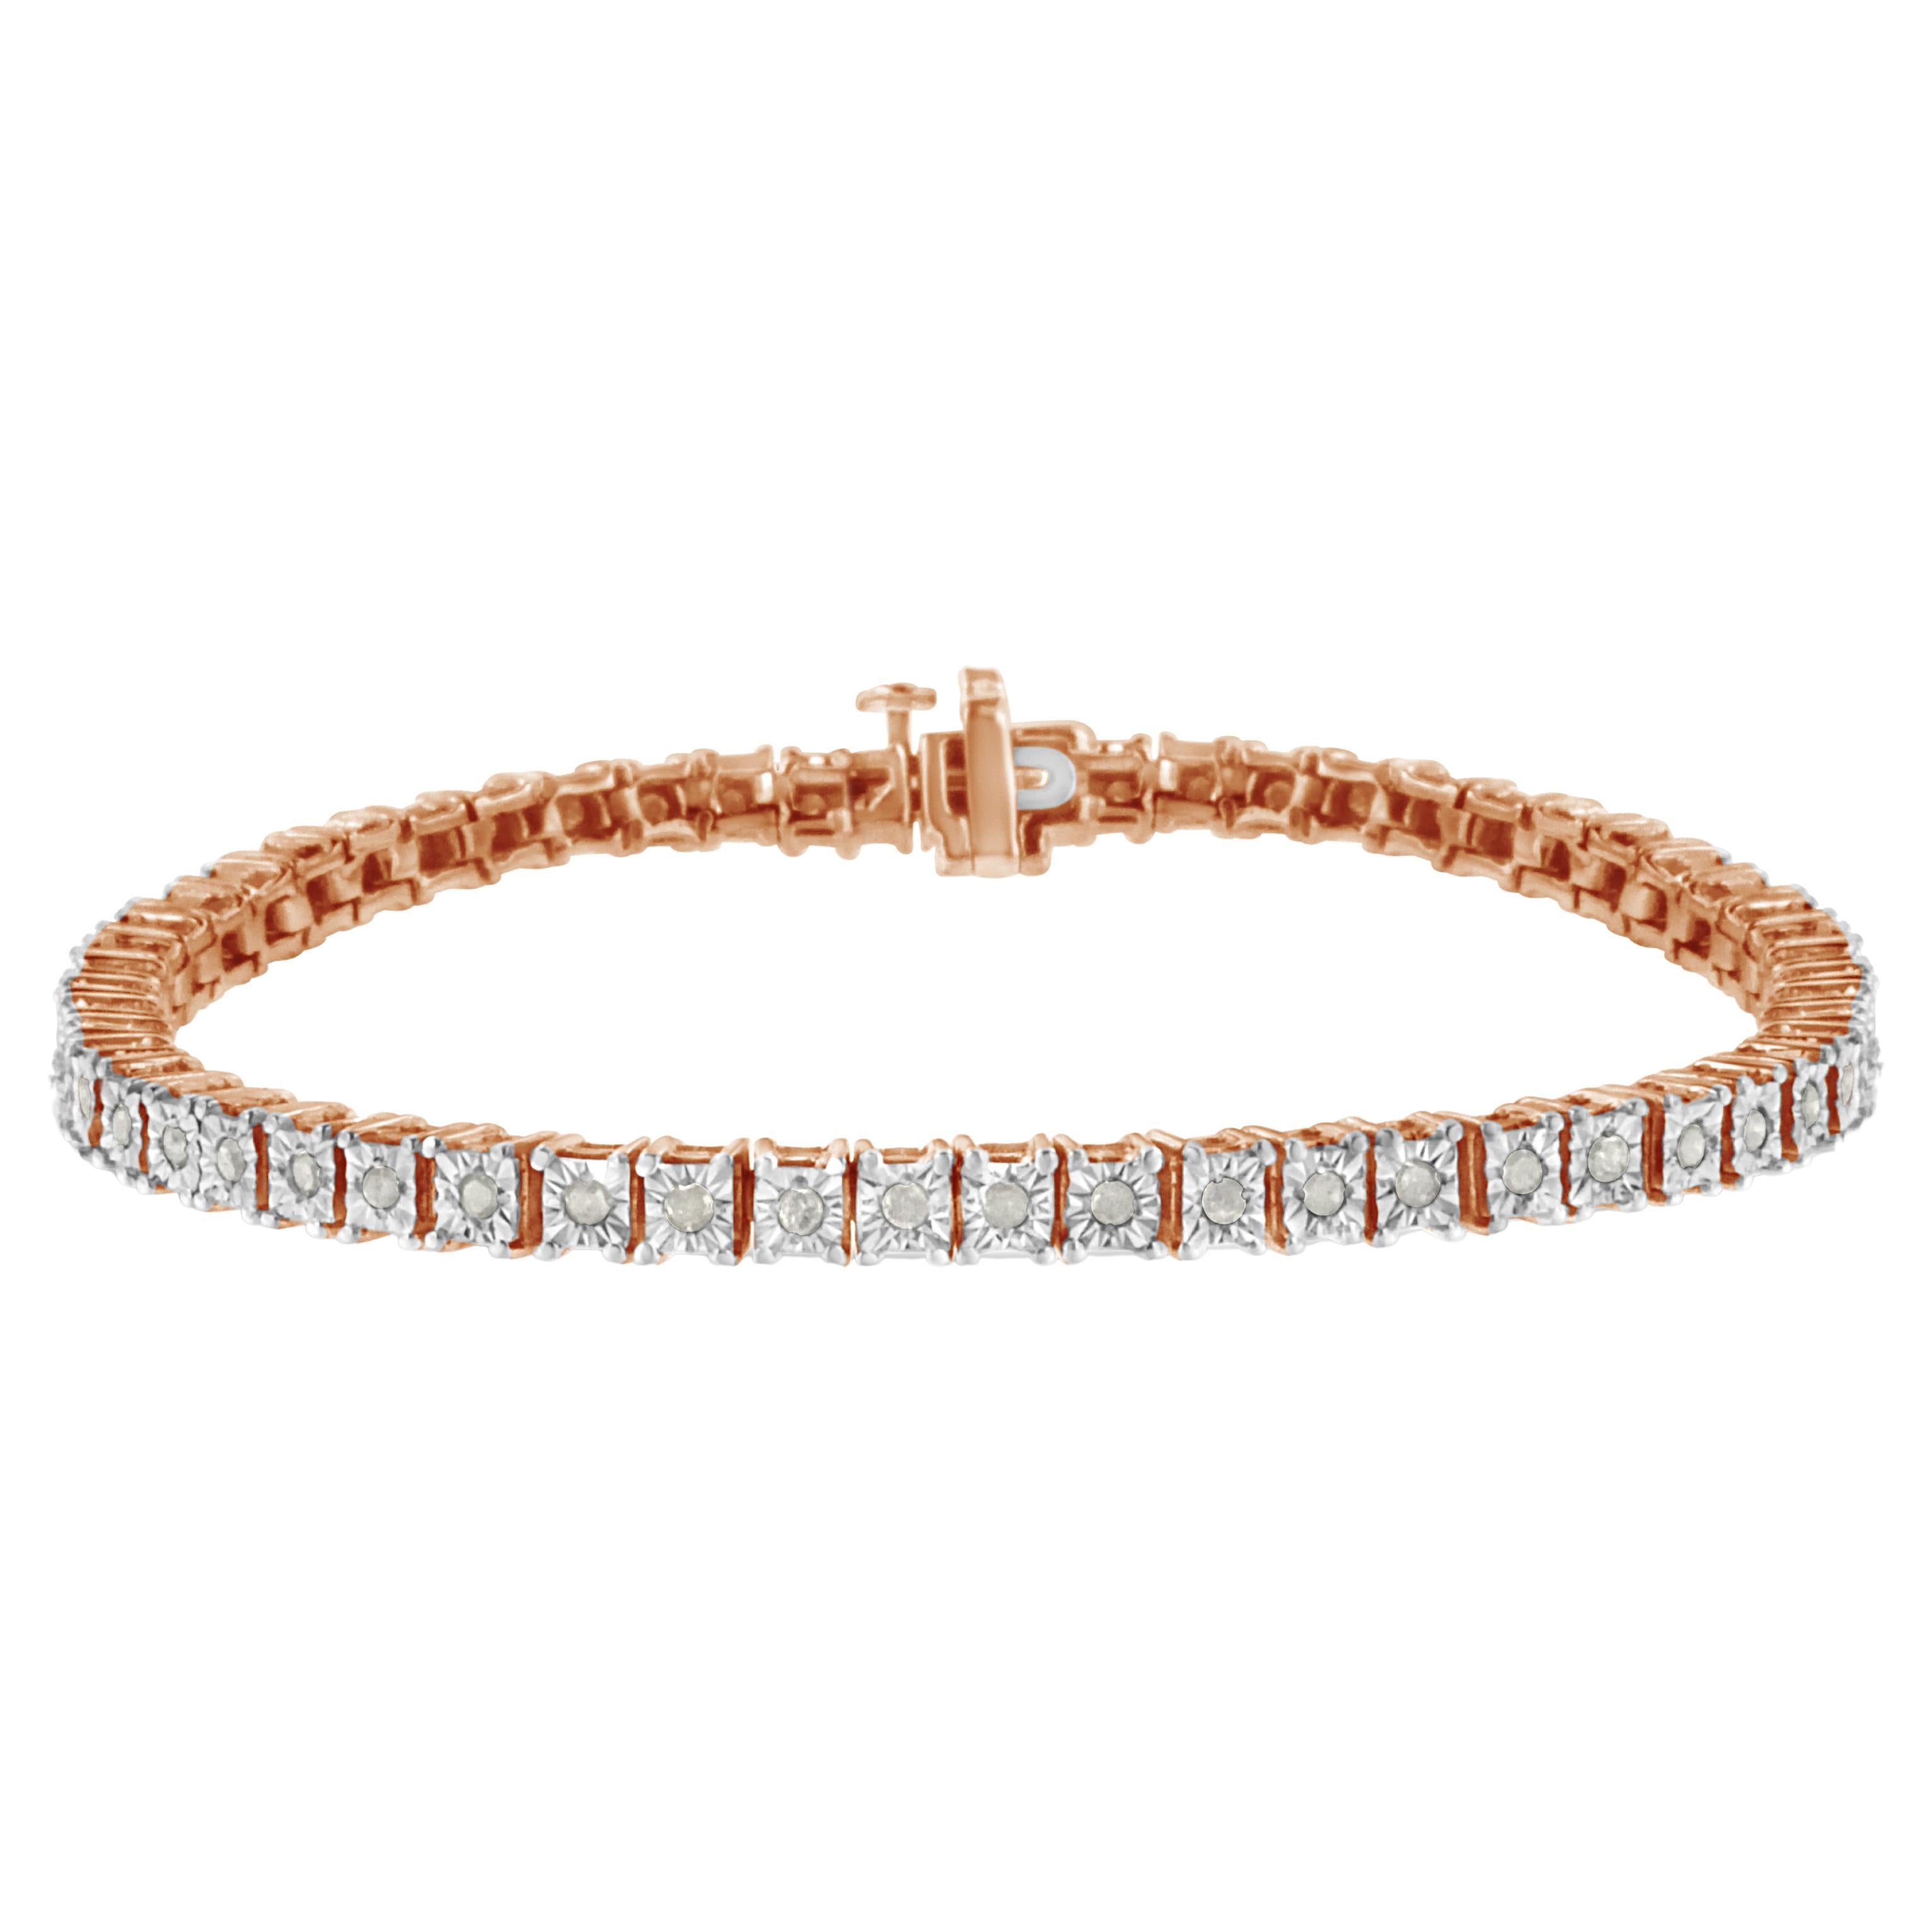 Bracelet tennis en or rose sur argent avec monture carrée sertie de diamants de 1,0 carat